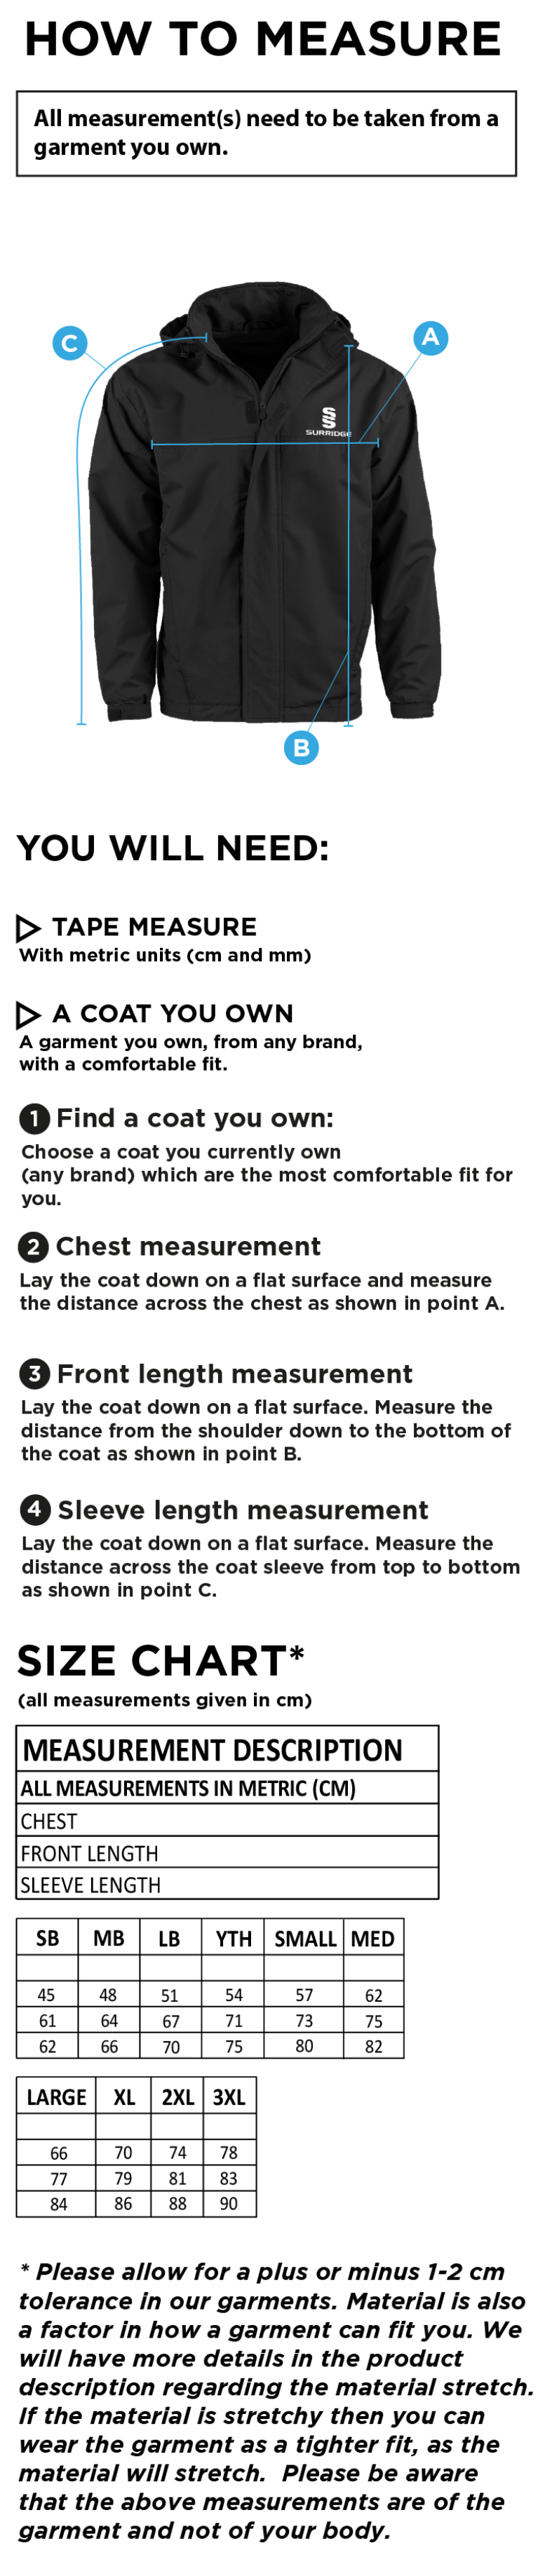 Team LJMU - Women's Dual Fleece Lined Jacket : Navy - Size Guide